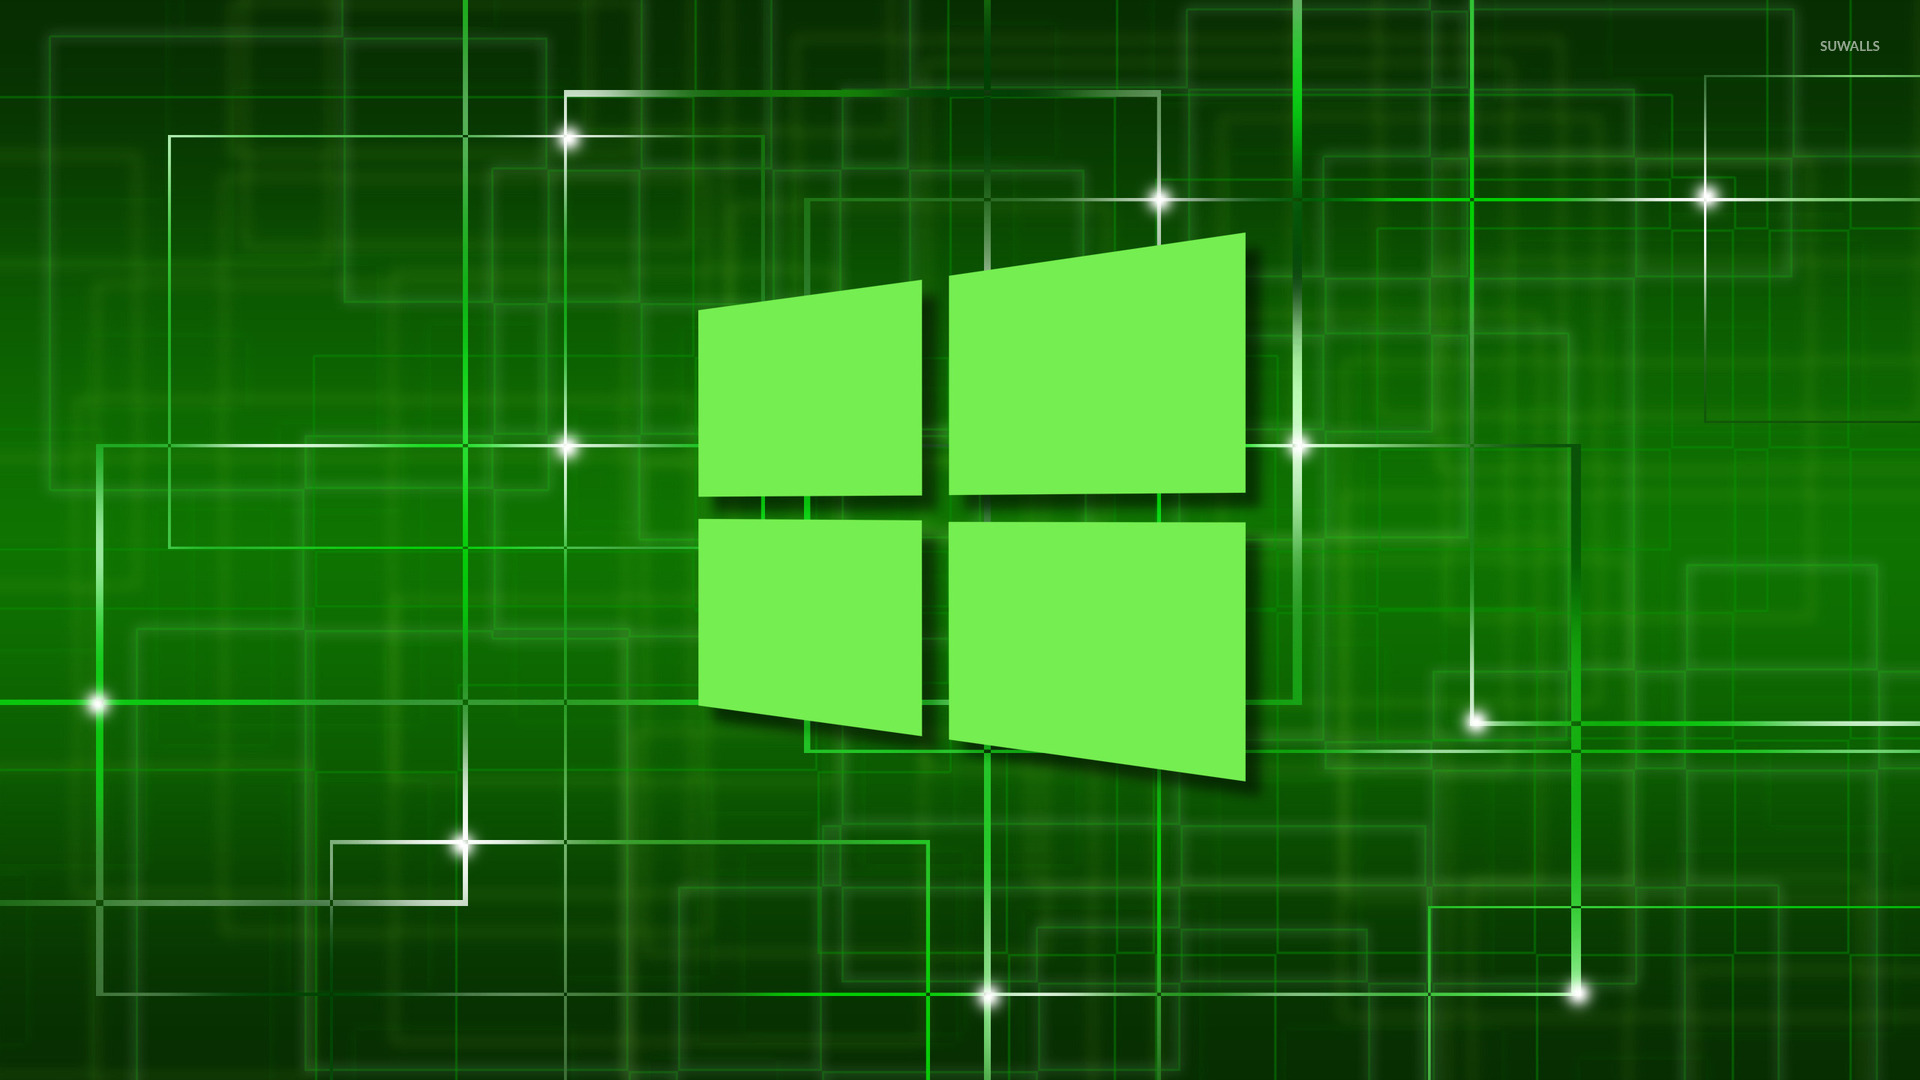 Windows 10 Green Wallpaper